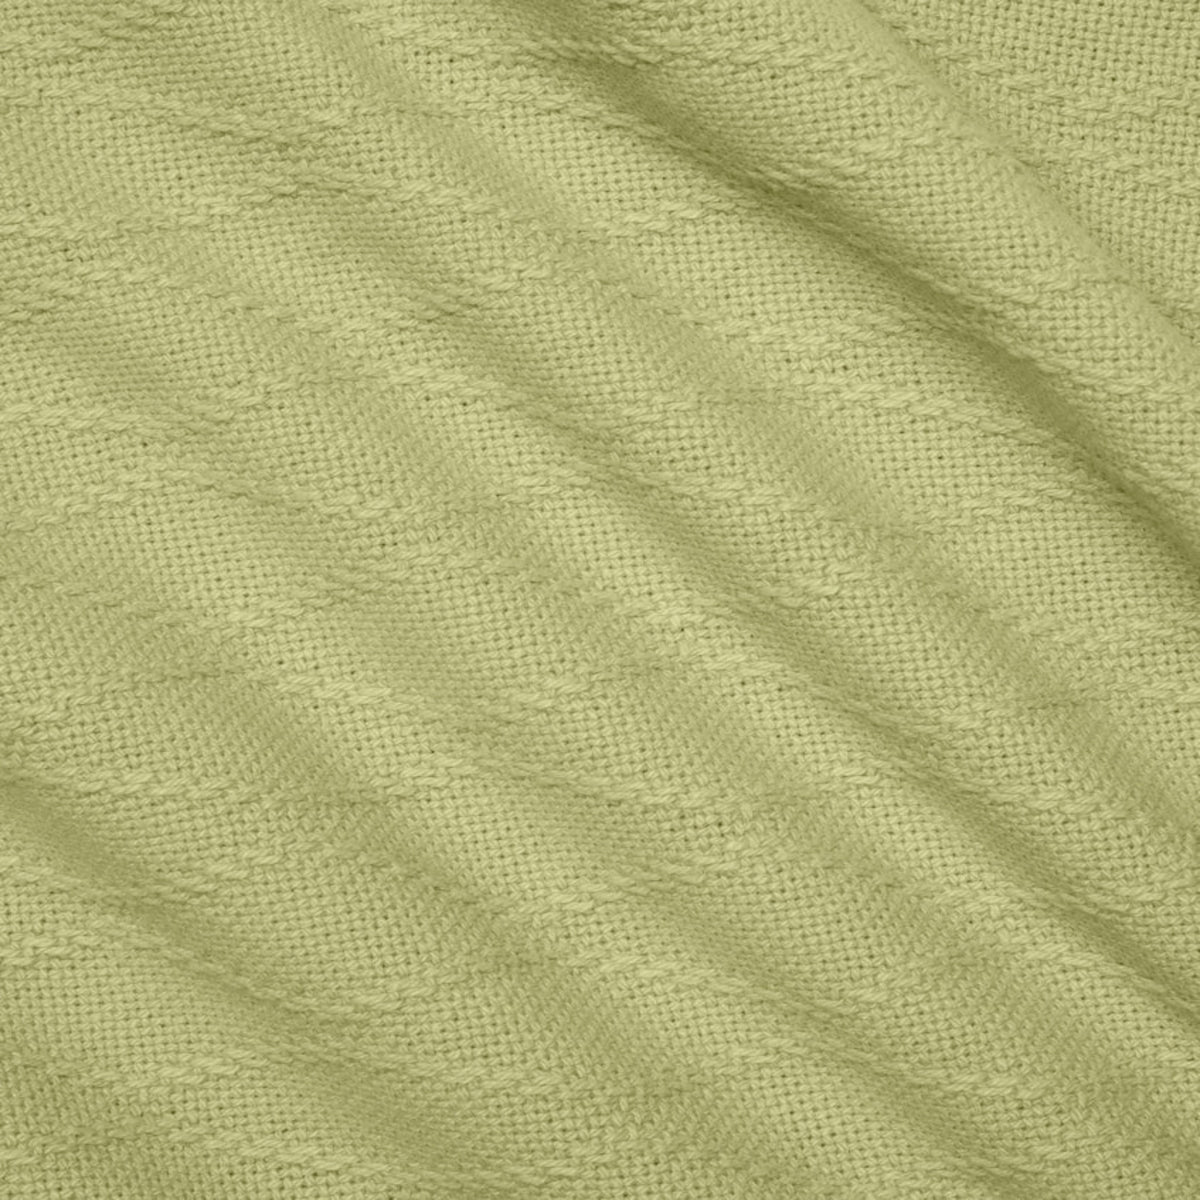 Swatch Sample of Sferra Cetara Bedding Kiwi Color